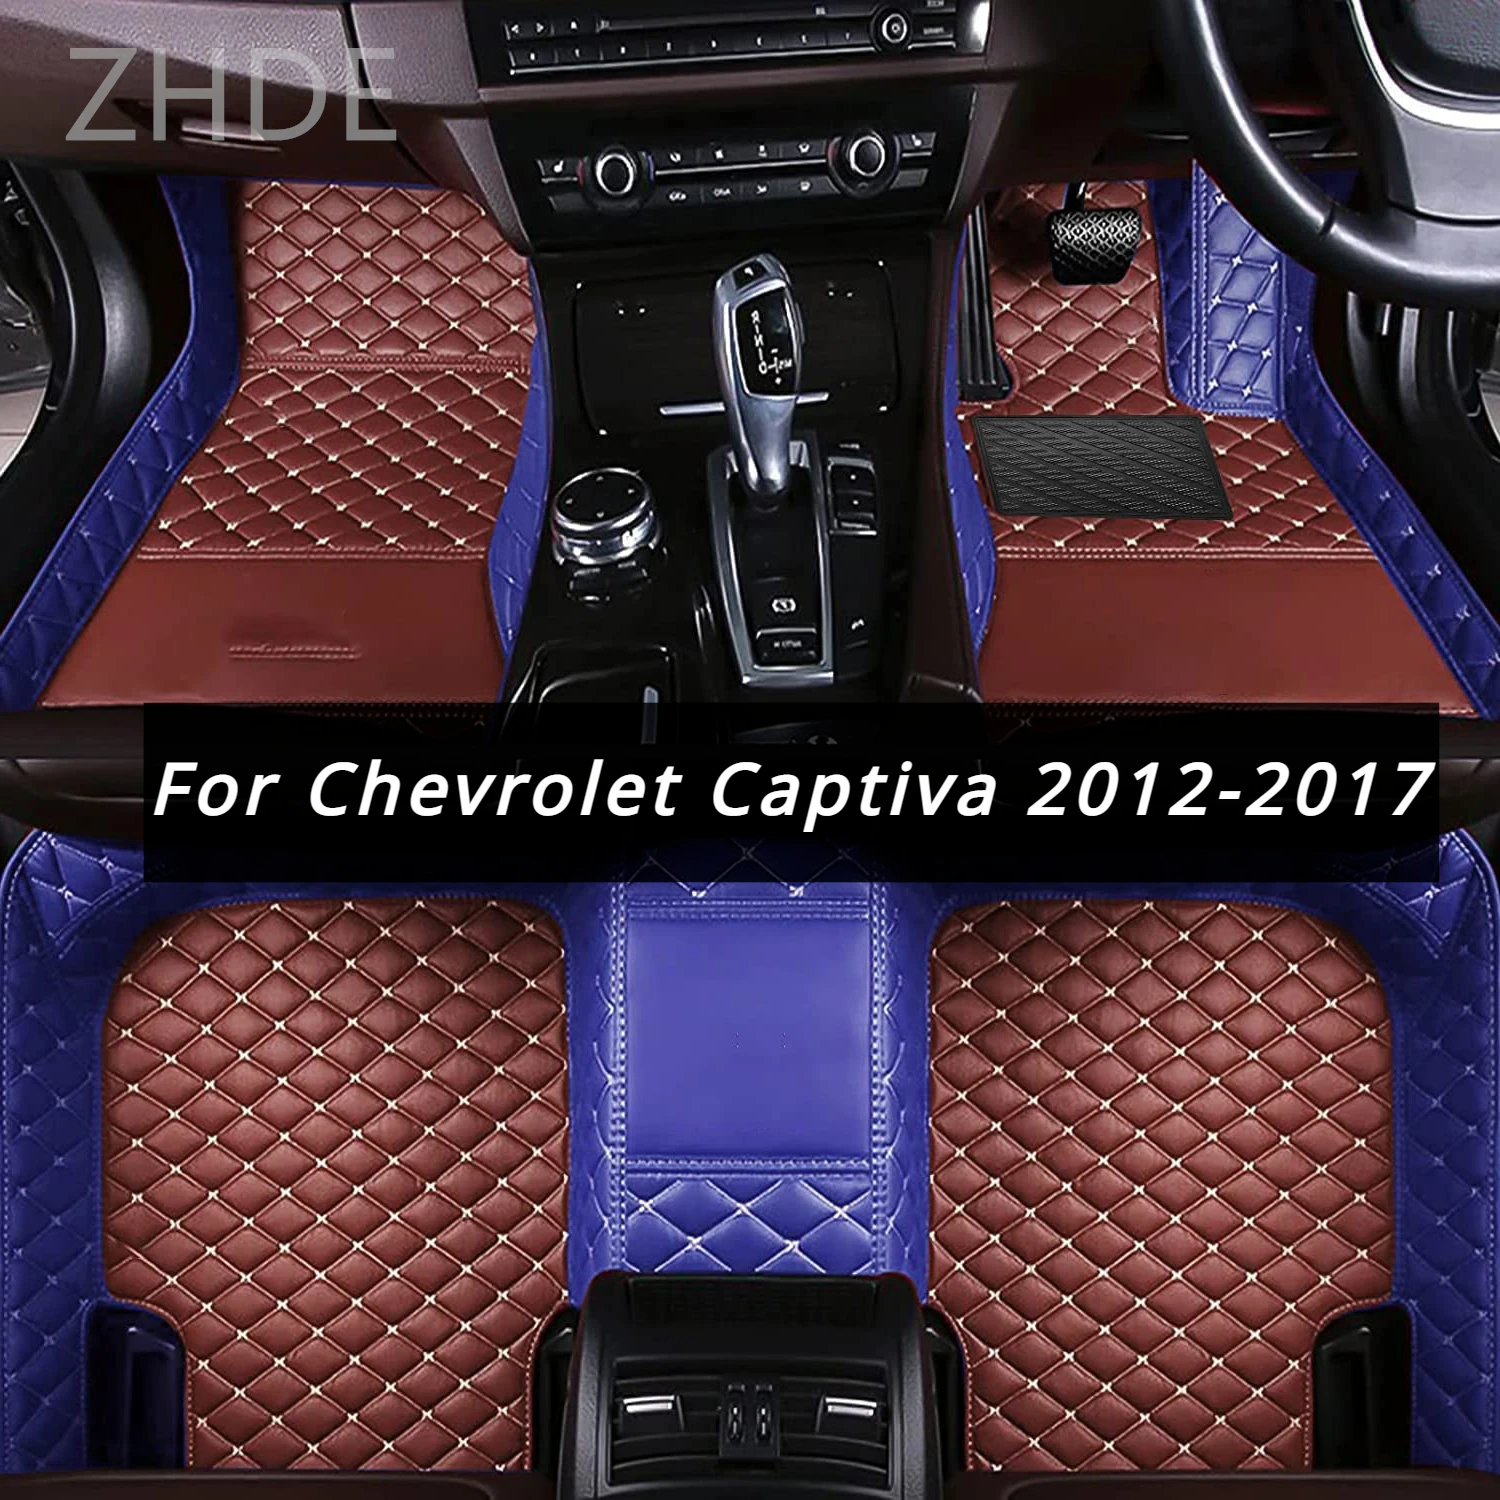 

RHD коврик для Chevrolet Captiva 5 мест 2017 2016 2015 2014 2013 2012 автомобильные коврики коврик для ног под заказ автомобильные аксессуары для интерьера